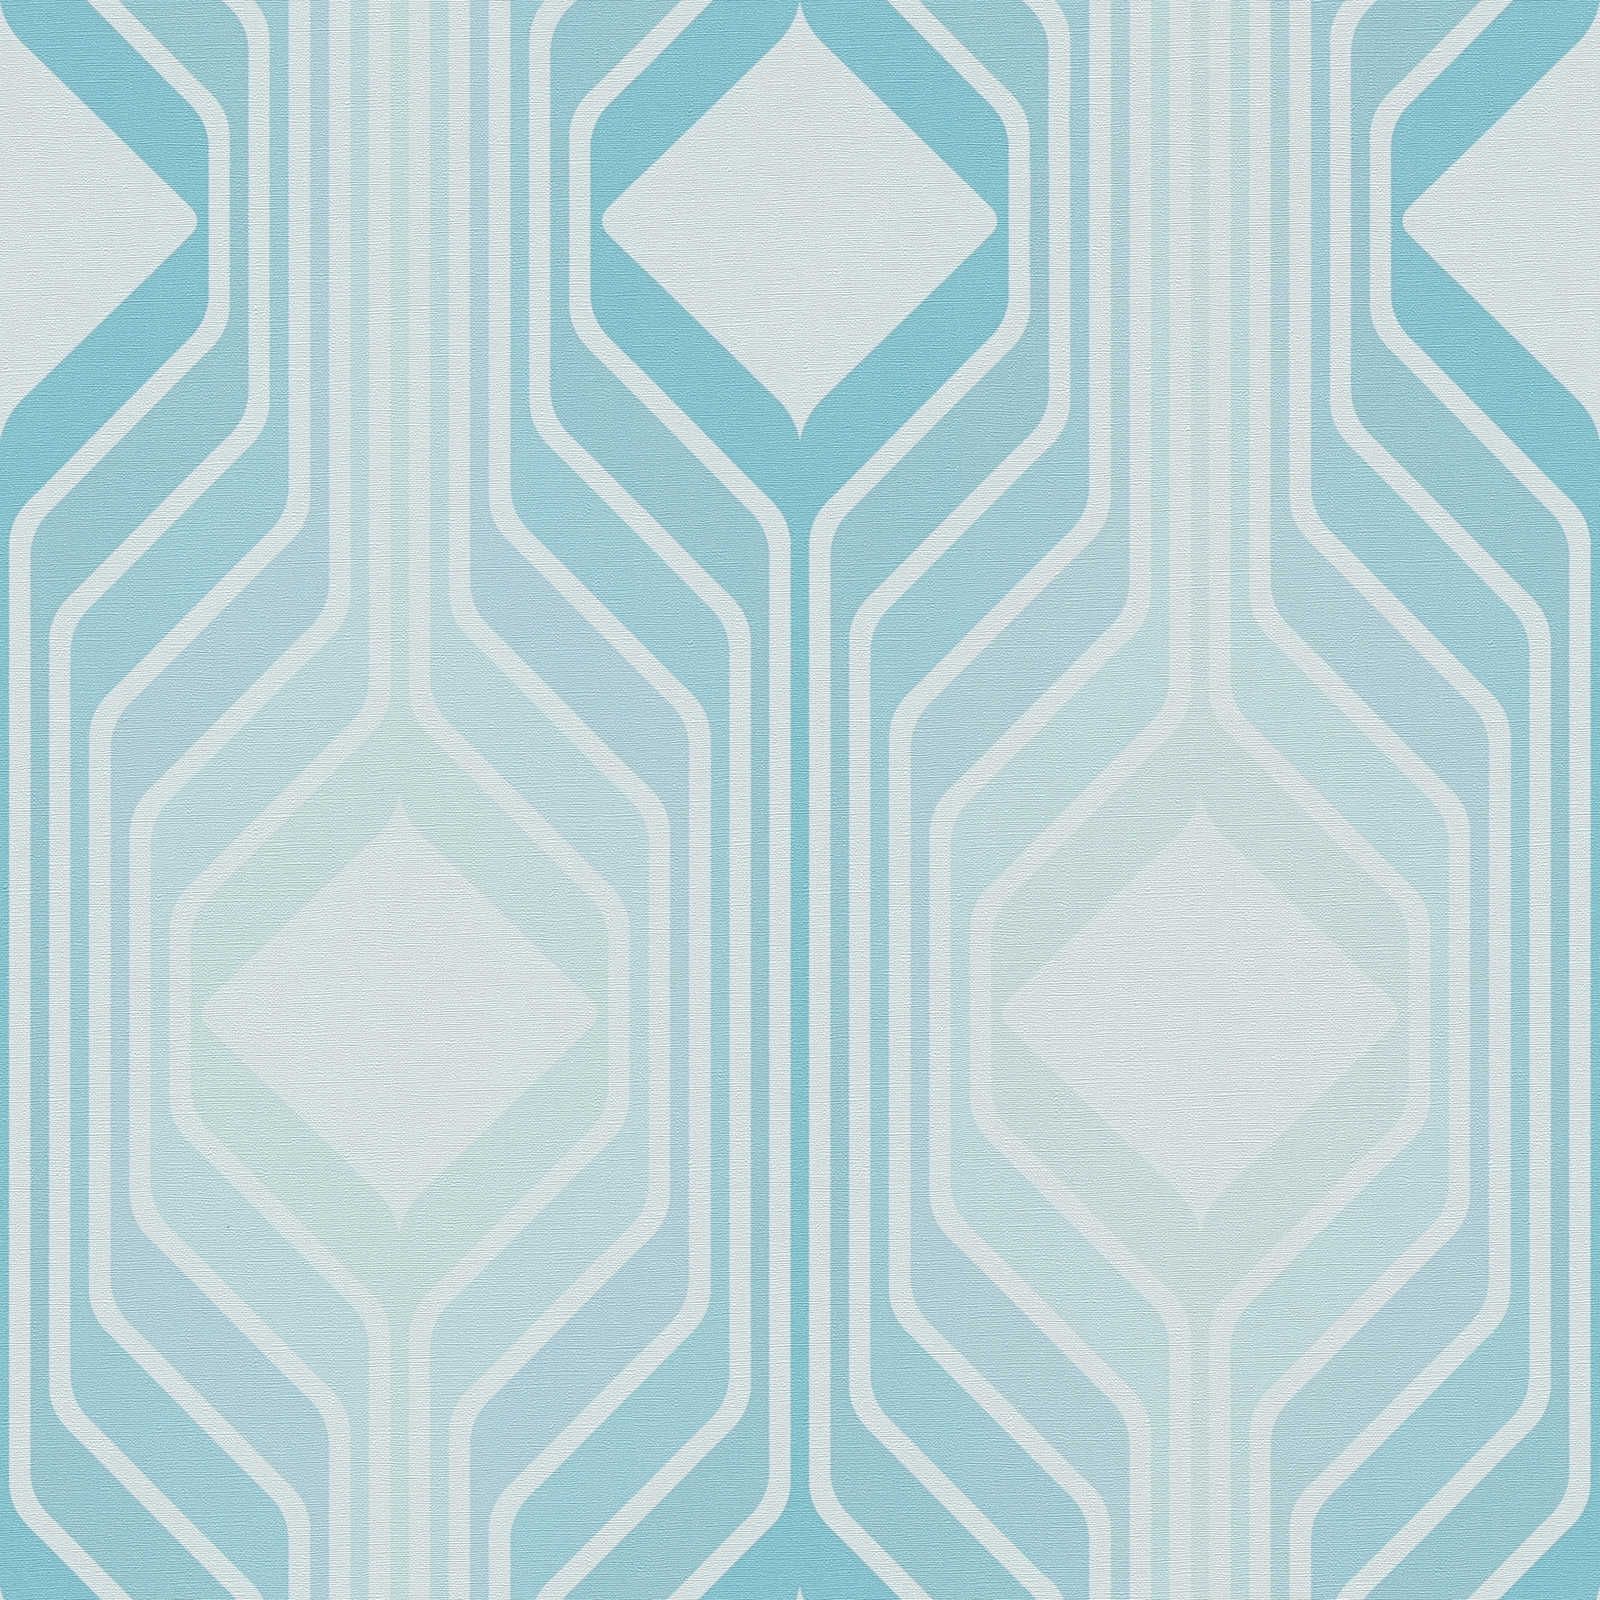 Motivo de rombos en papel pintado no tejido retro - azul, azul claro, turquesa
